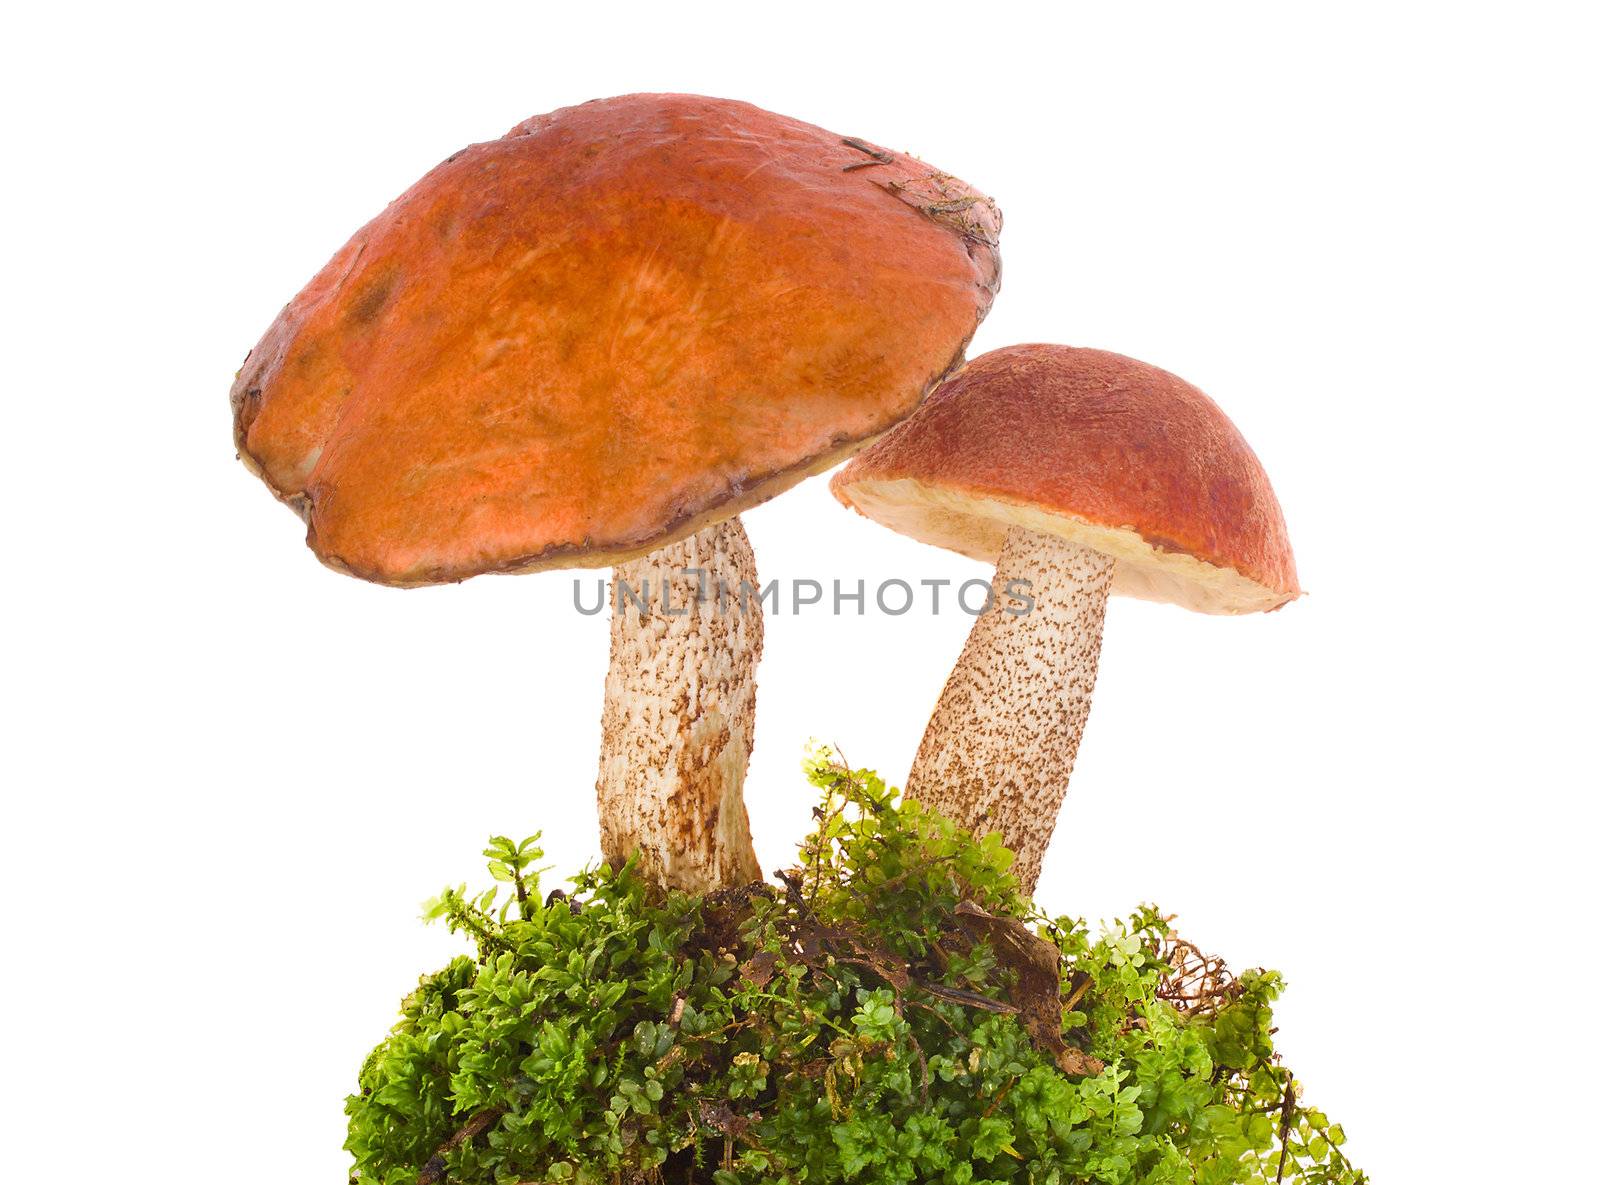 orange-cap boletus in moss by Alekcey